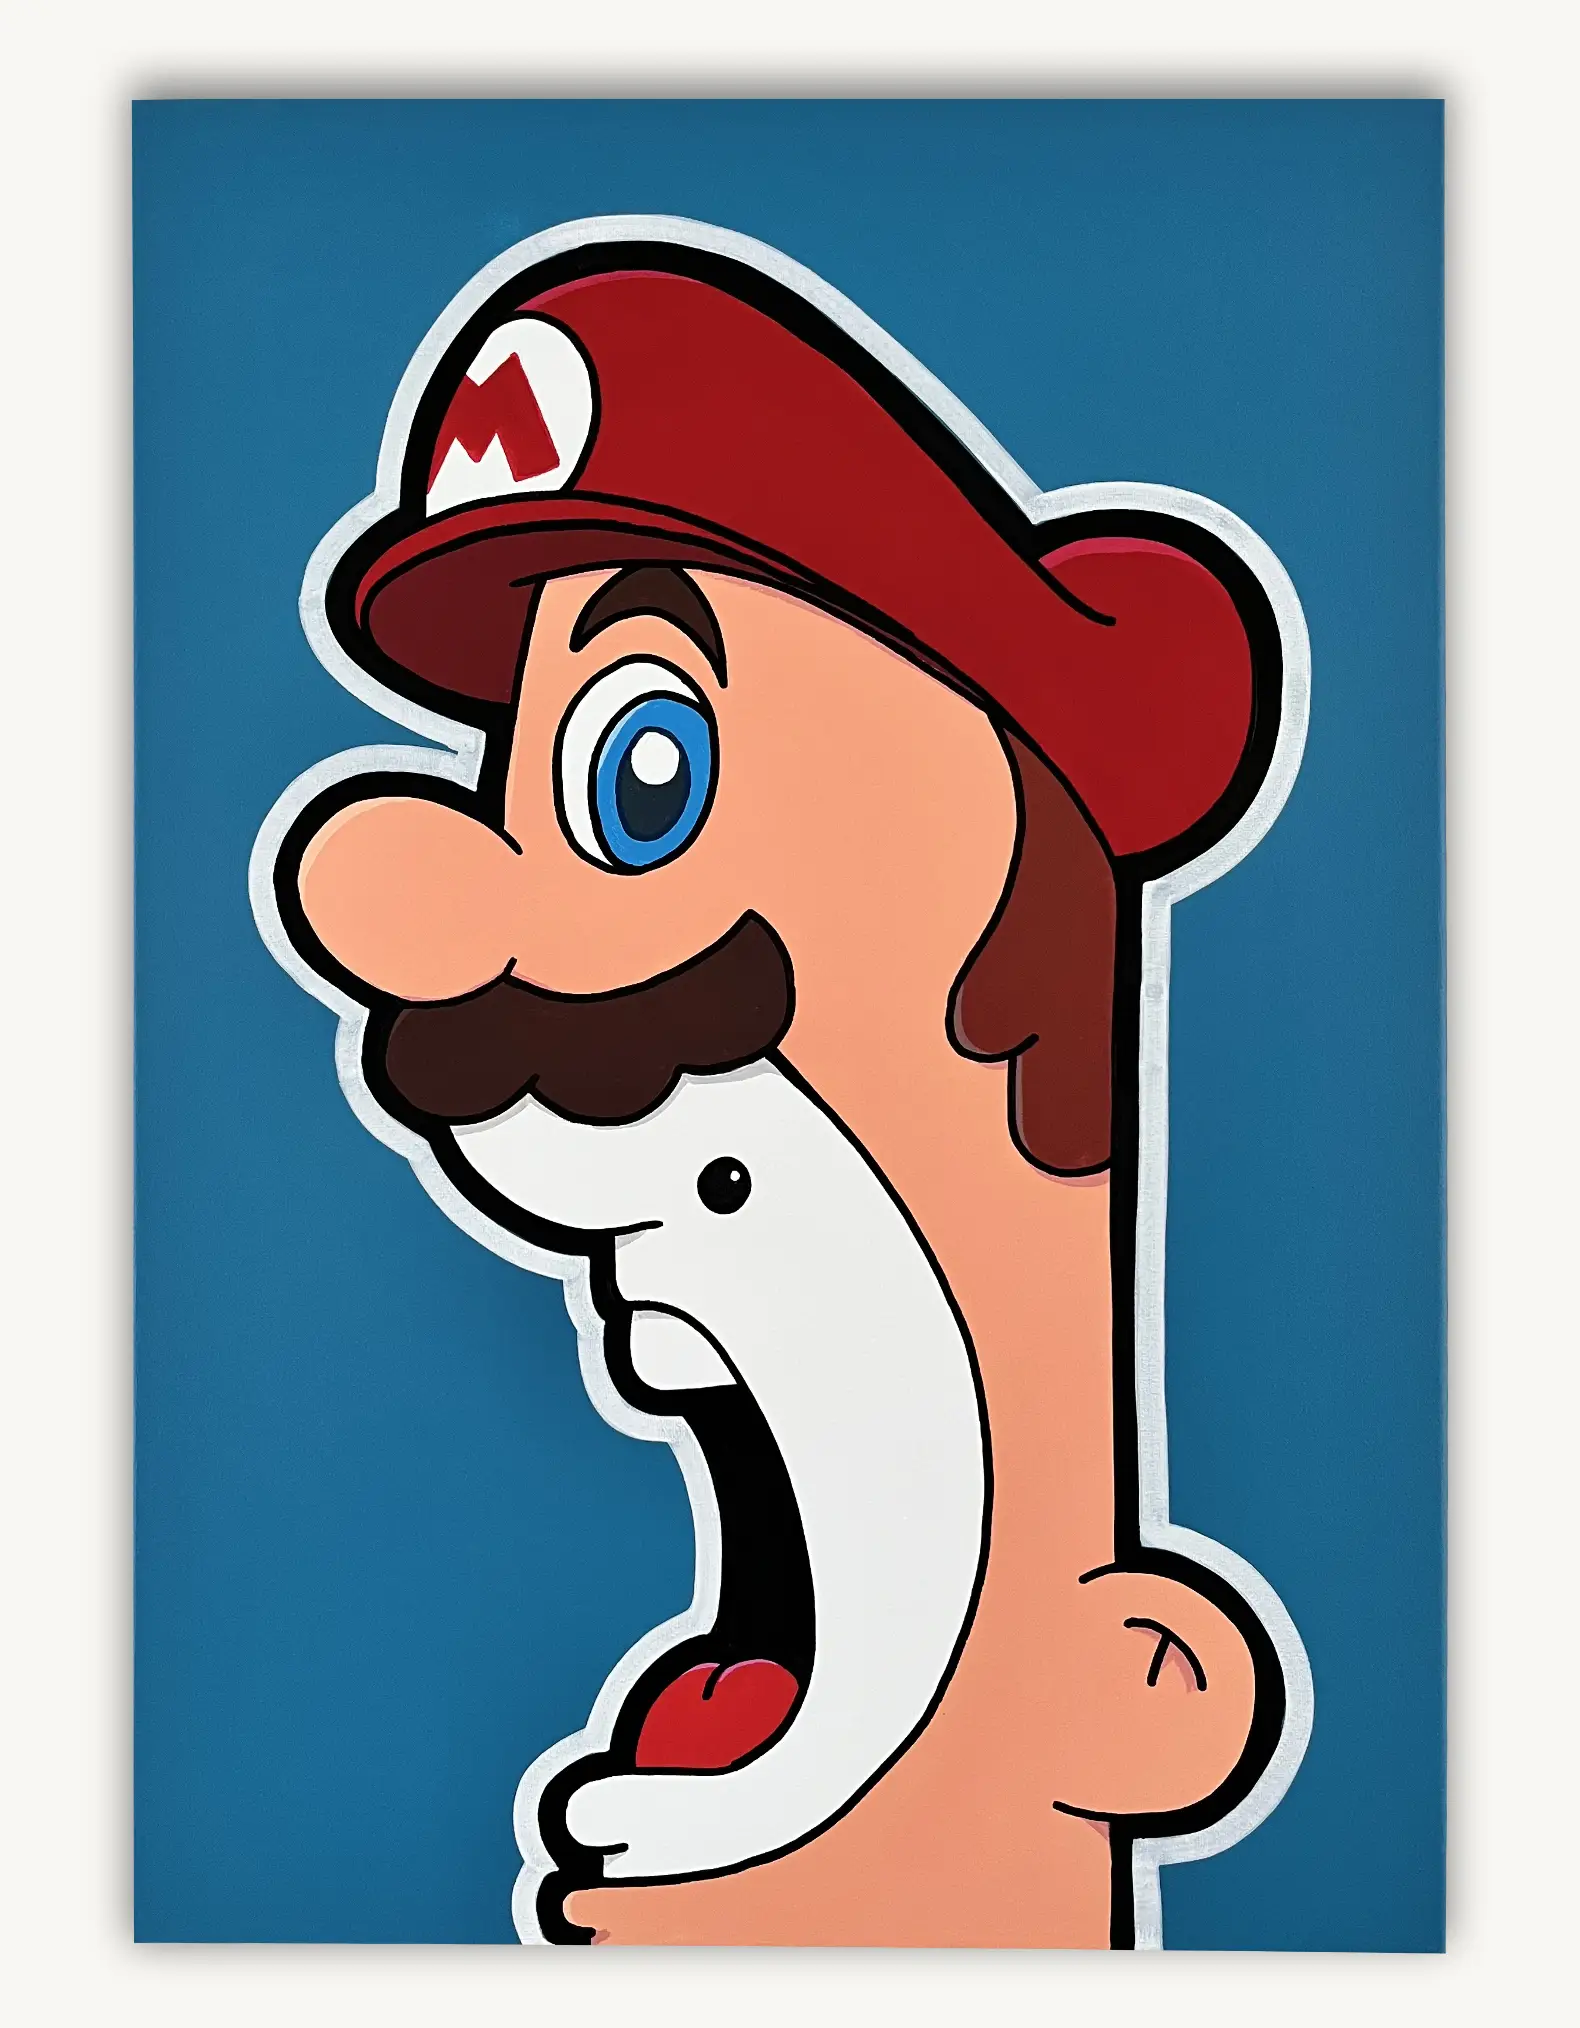 Shouter vs Mario